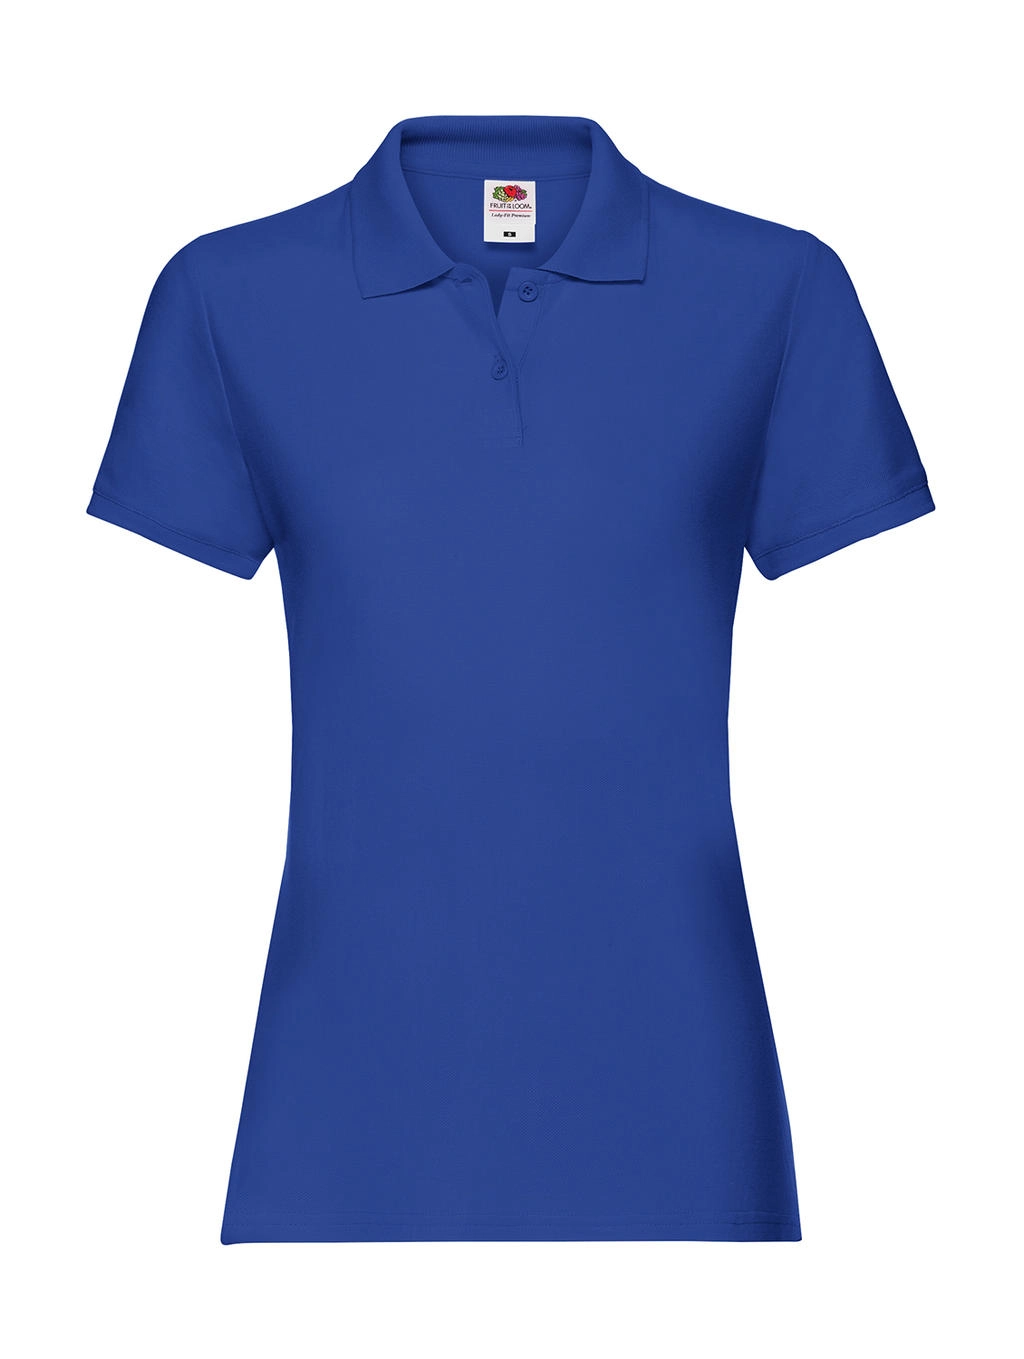 Ladies` Premium Polo zum Besticken und Bedrucken in der Farbe Royal Blue mit Ihren Logo, Schriftzug oder Motiv.